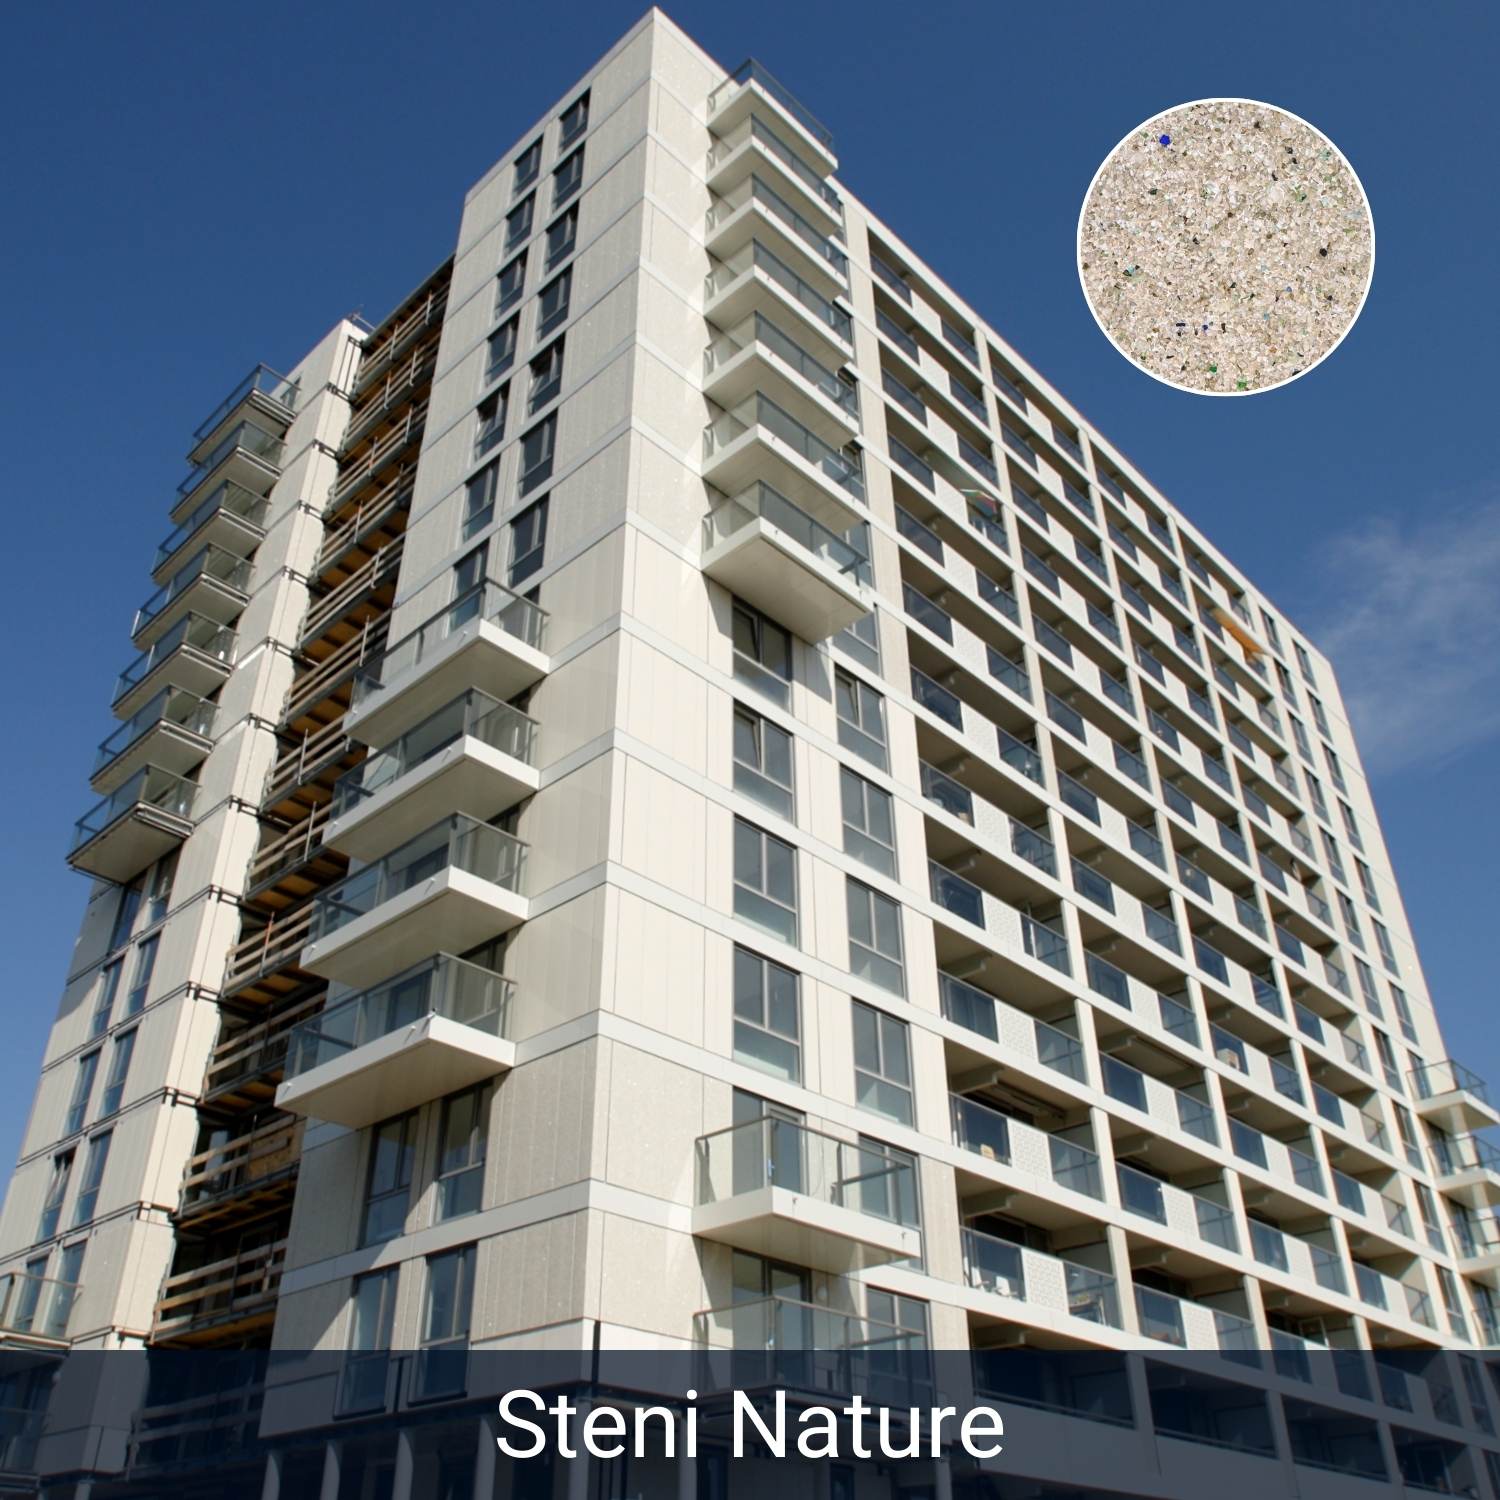 Steni Nature Aggregate Composite Stone Rainscreen Panels